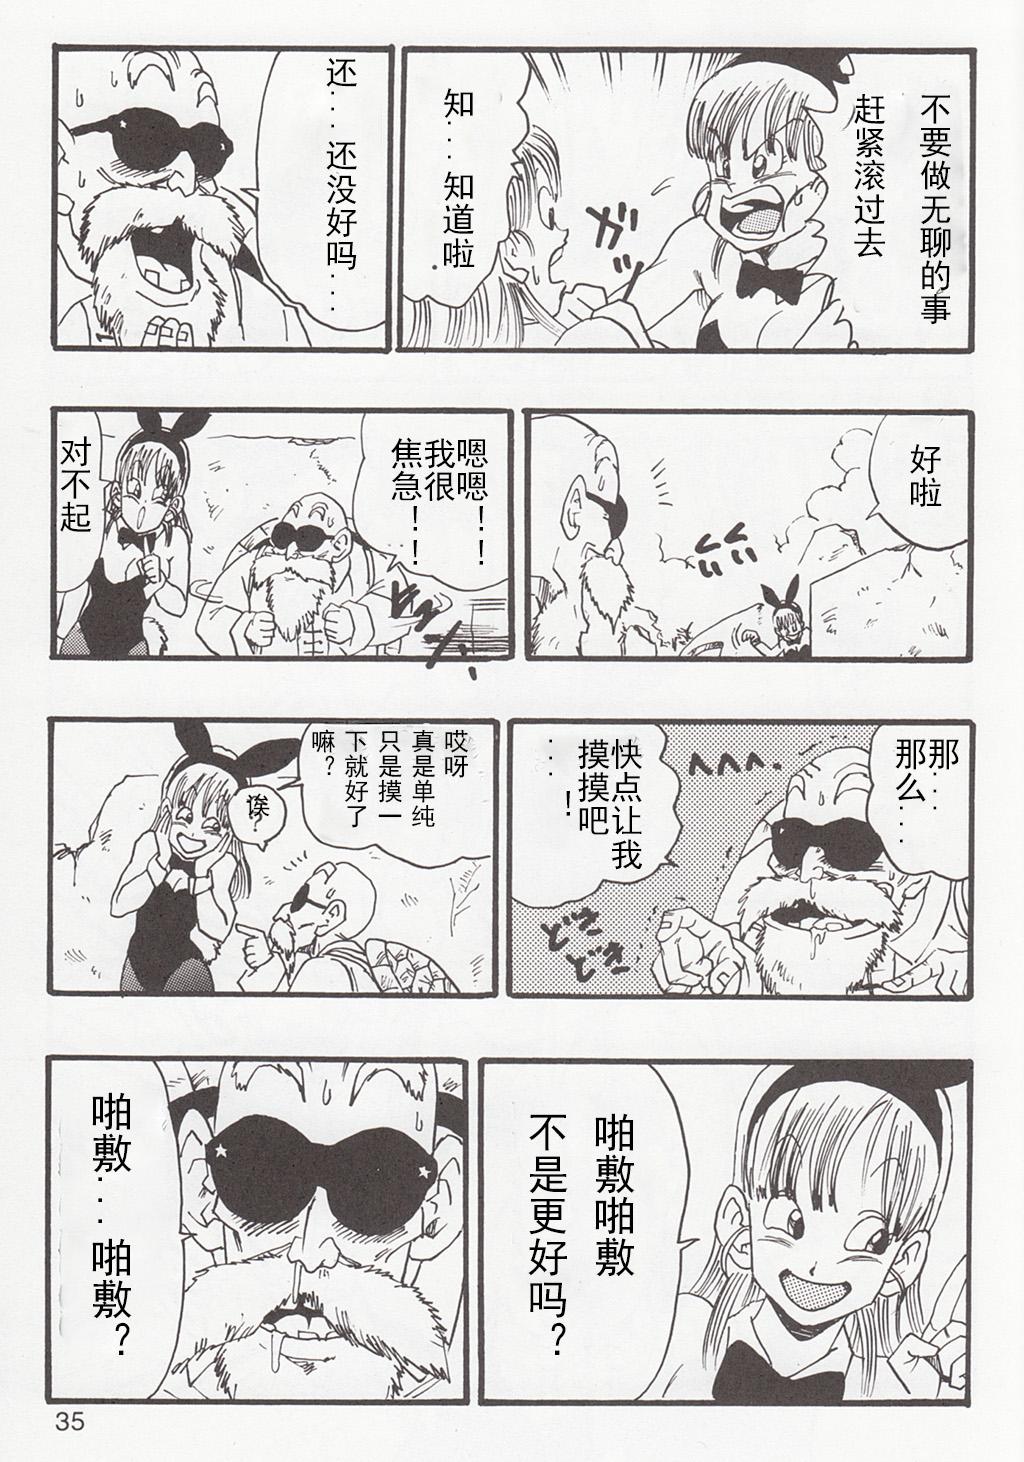 Gay Outinpublic Dragon Ball EB 1 - Episode of Bulma - Dragon ball Dando - Page 4